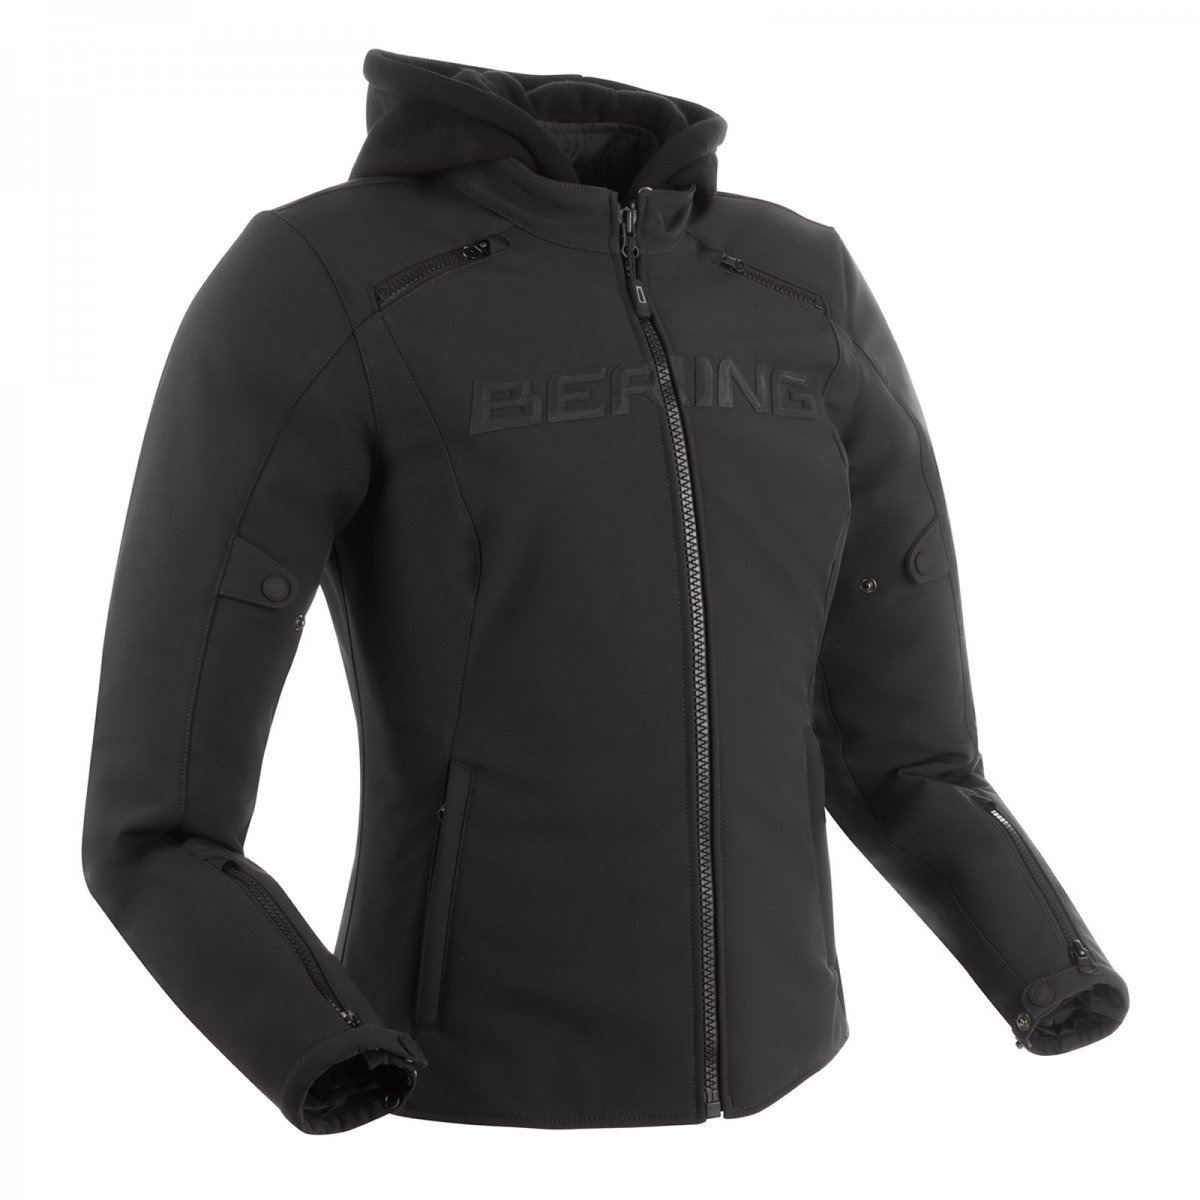 Image of Bering Elite Jacket Lady Black Size T4 ID 3660815170403